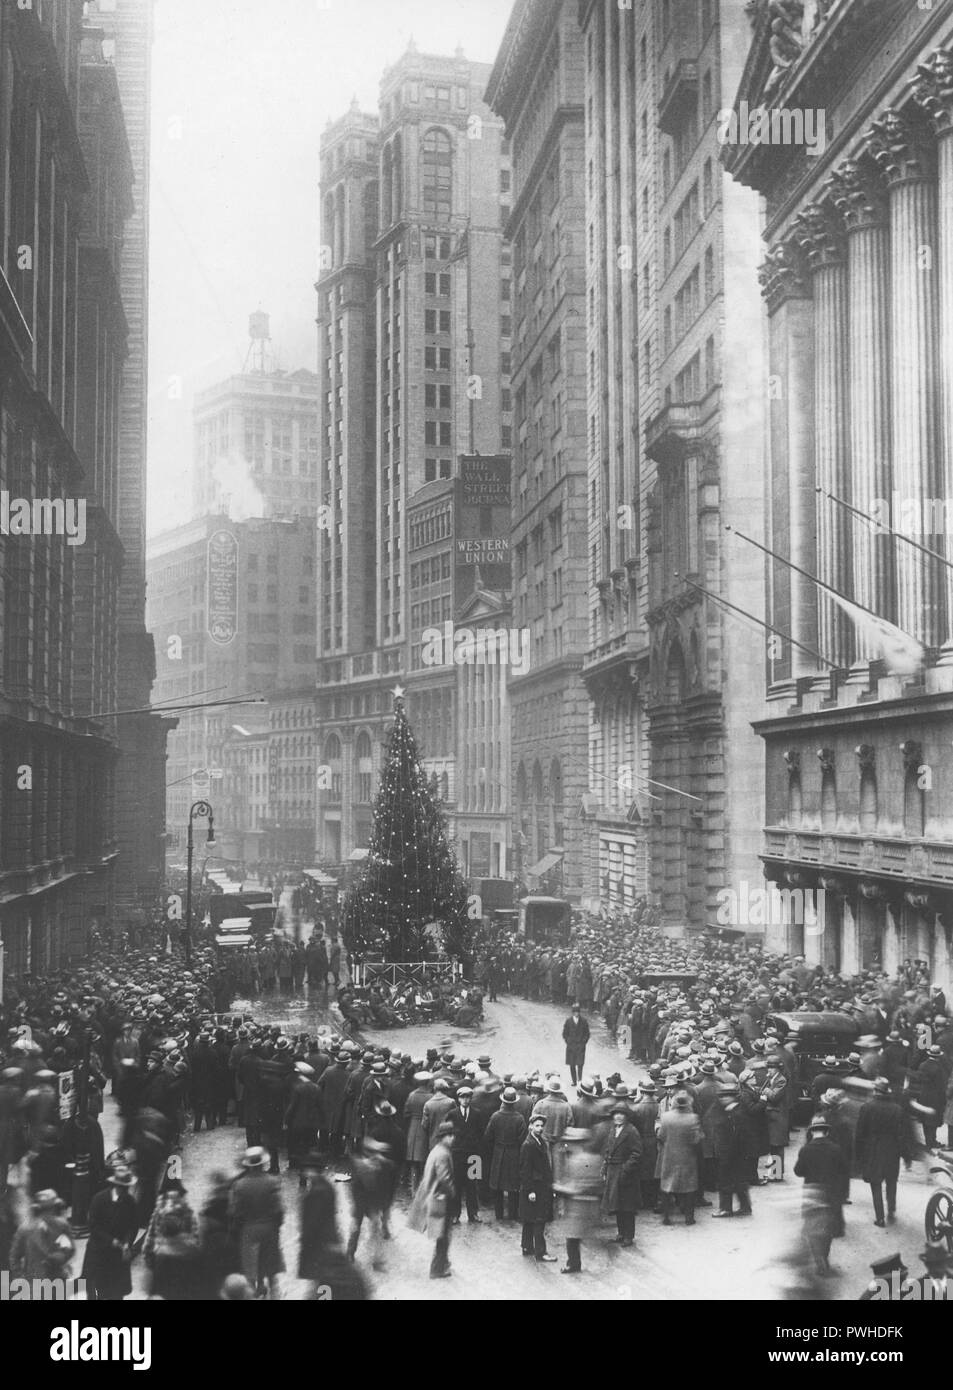 Noël dans les années 1920. Un grand arbre de Noël est debout au milieu de Wall Street à New York. Les gens se sont réunis autour de lui pour écouter la musique de la bande qui joue assis sous l'arbre. Sur la droite du bâtiment abritant la Bourse le 11 Wall street. 26 décembre 1925. Banque D'Images